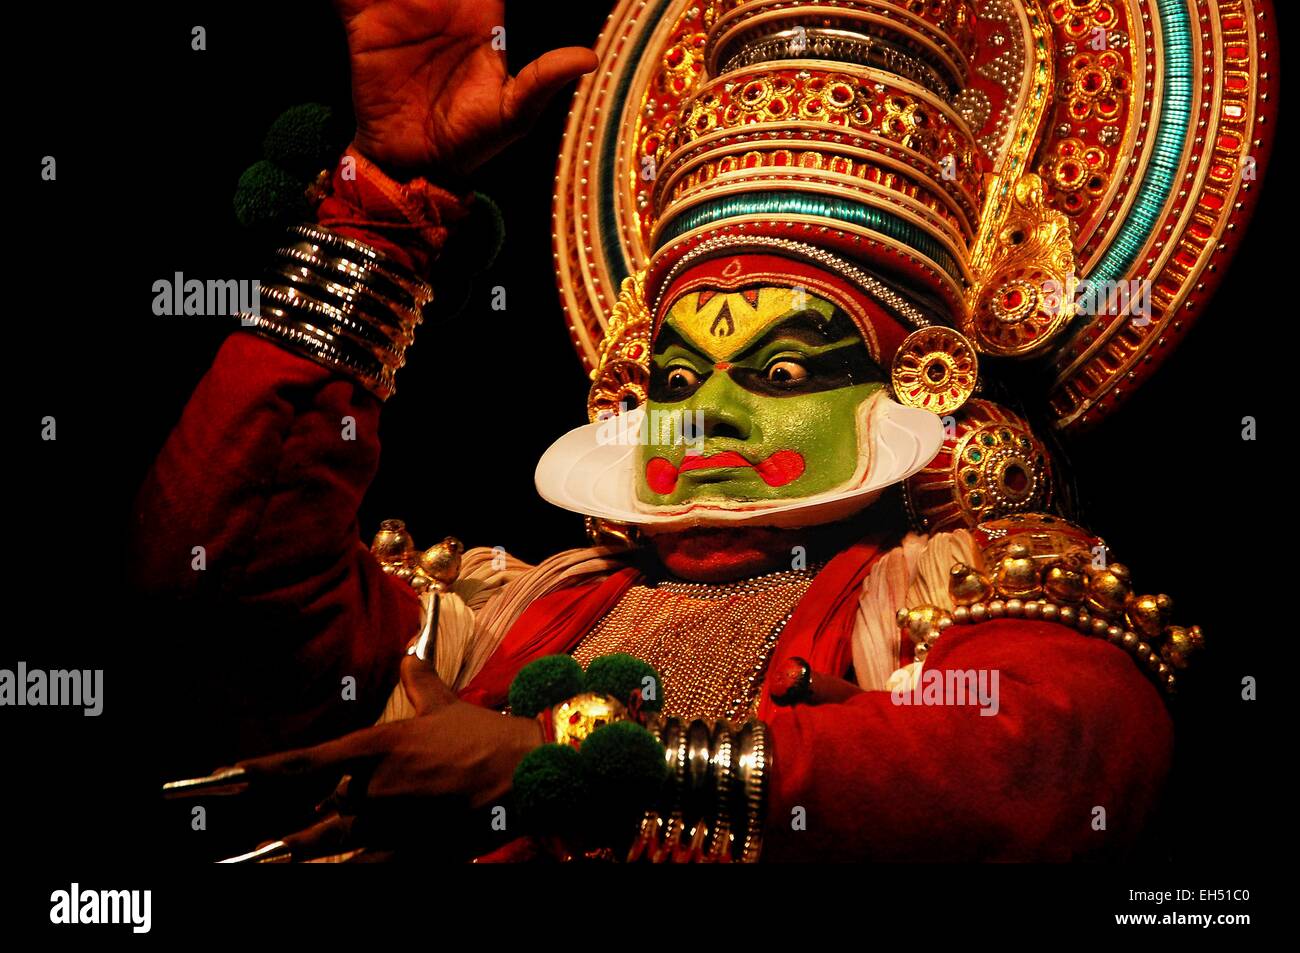 L'Inde, Kerala, Cochin, portrait d'un artiste de la danse Kathakali Banque D'Images